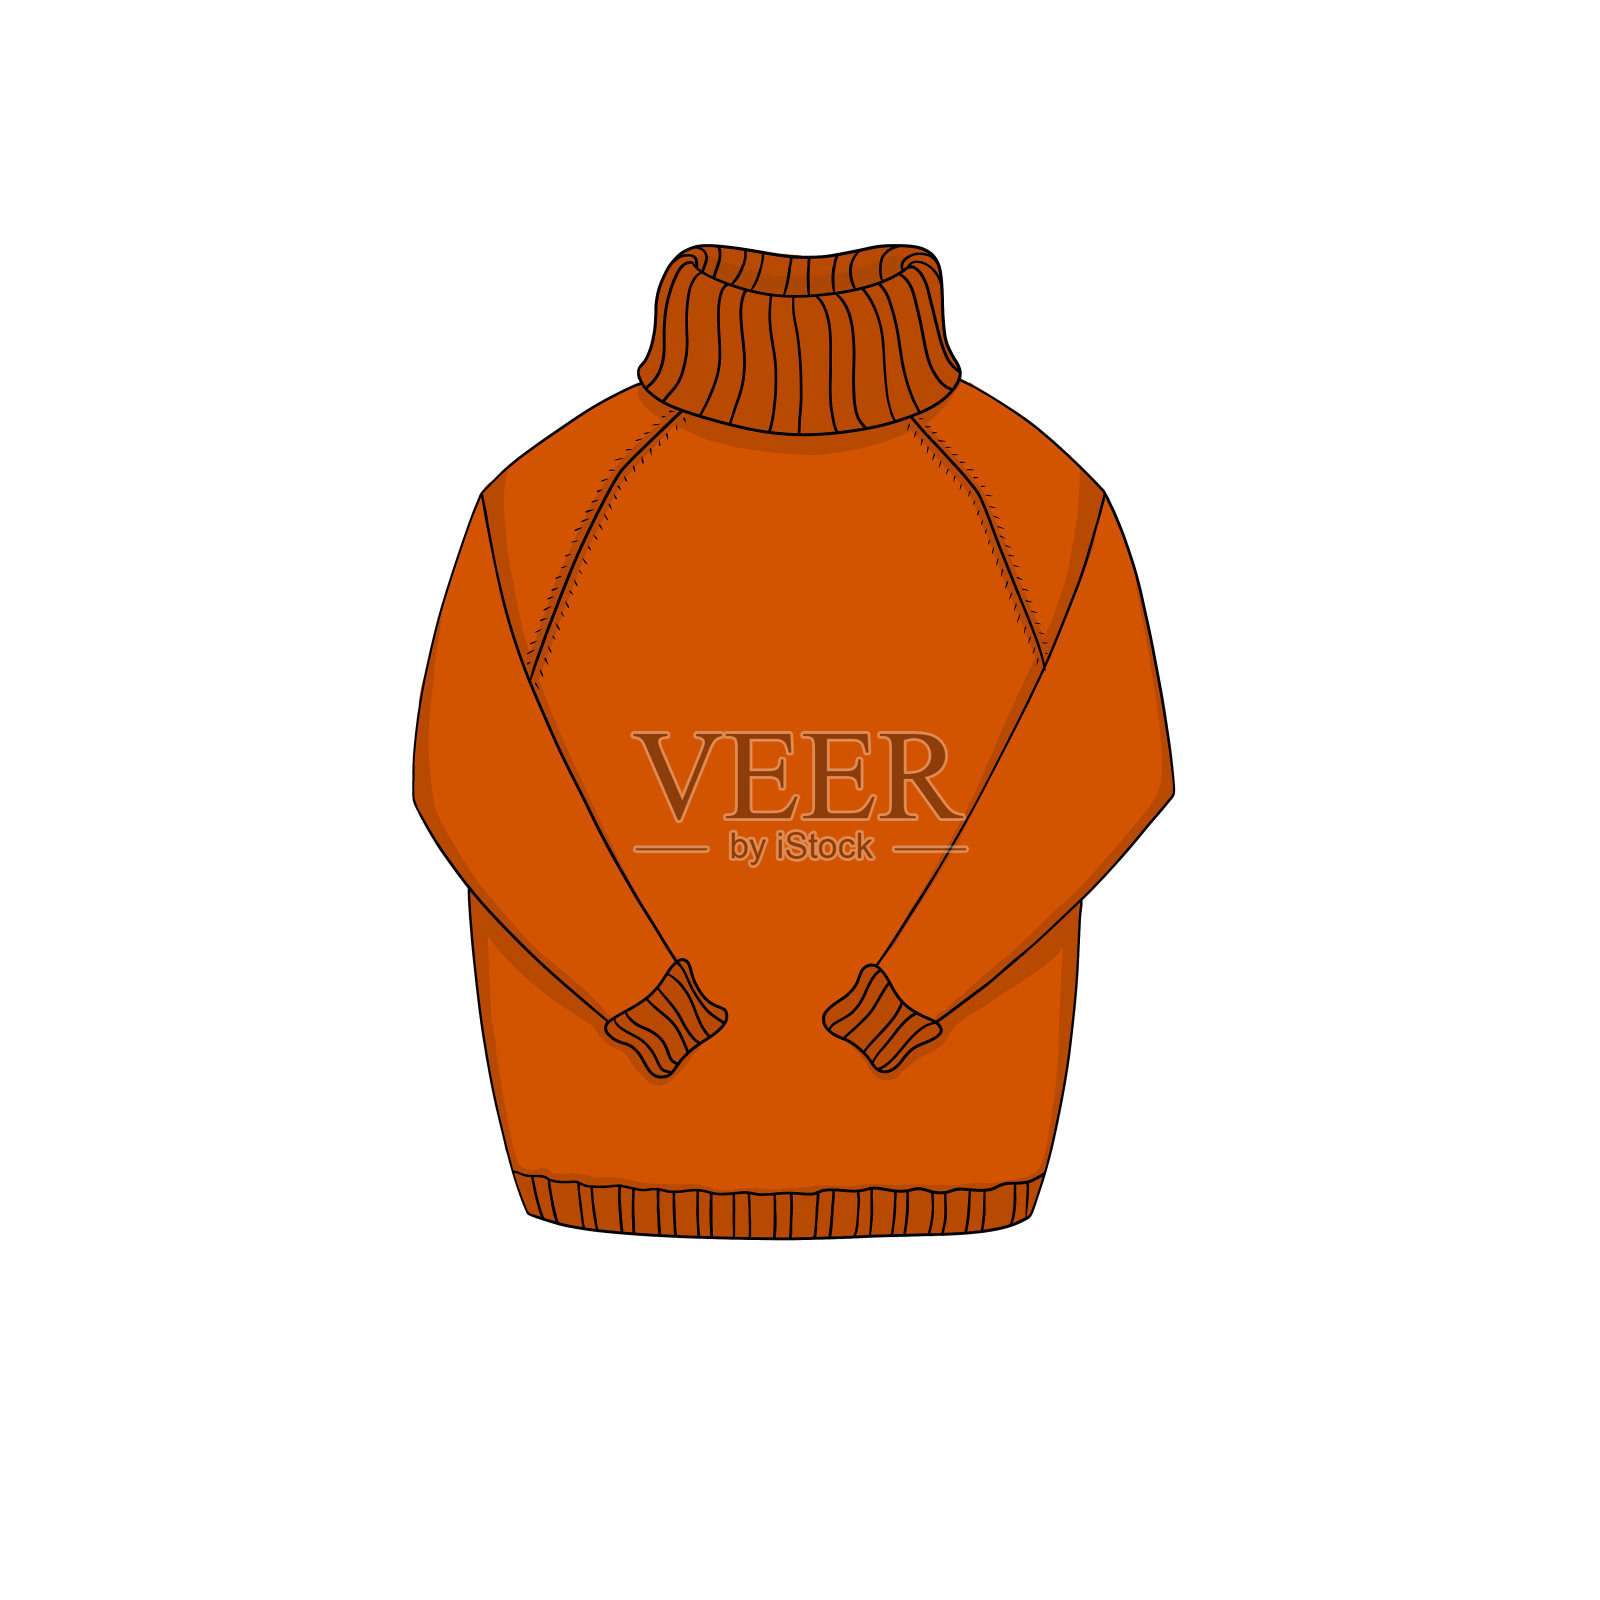 卡通橙红色毛衣。寒冷天气穿的舒适针织套衫或套头衫。物体隔离在白色背景上。插画图片素材